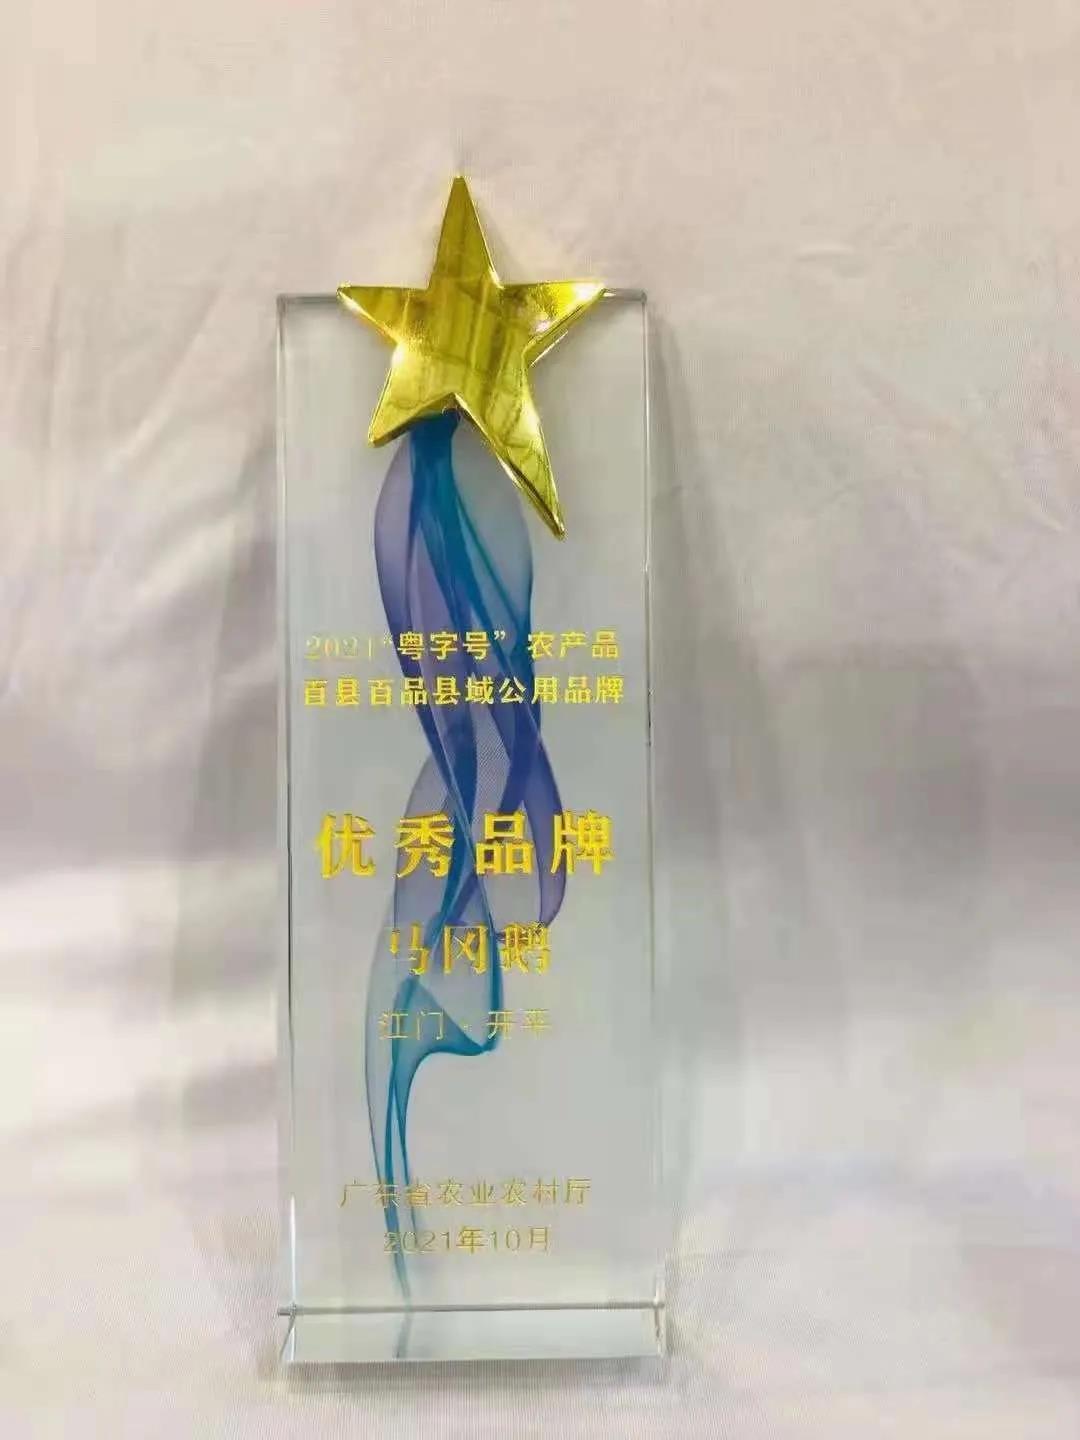 马冈鹅获“2021‘粤字号’农产品百县百品县域公用品牌优秀品牌”奖杯。